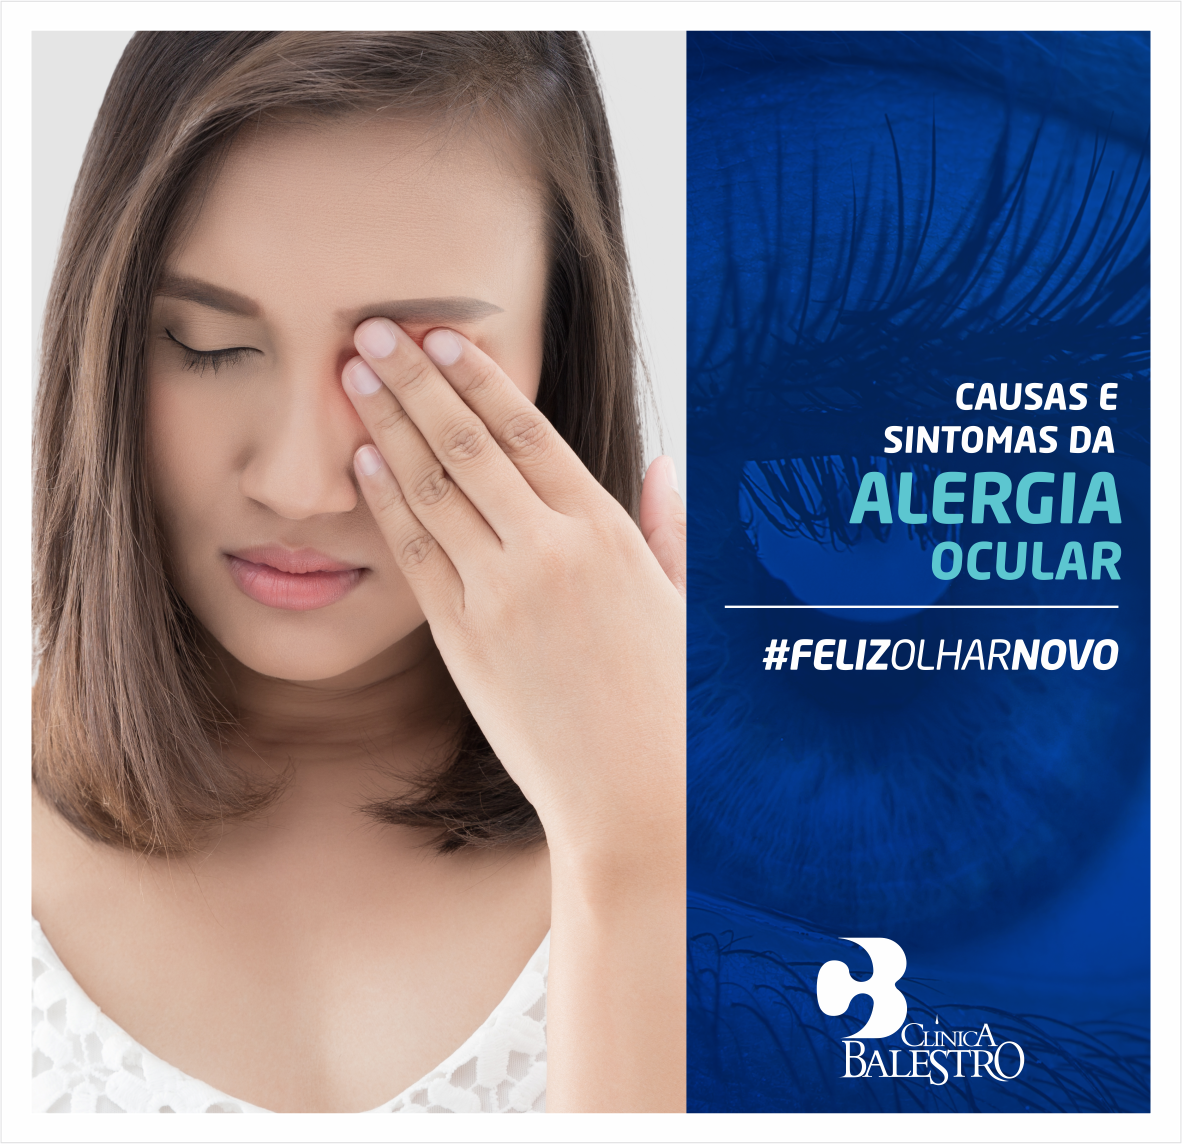 Causas e sintomas da alergia ocular